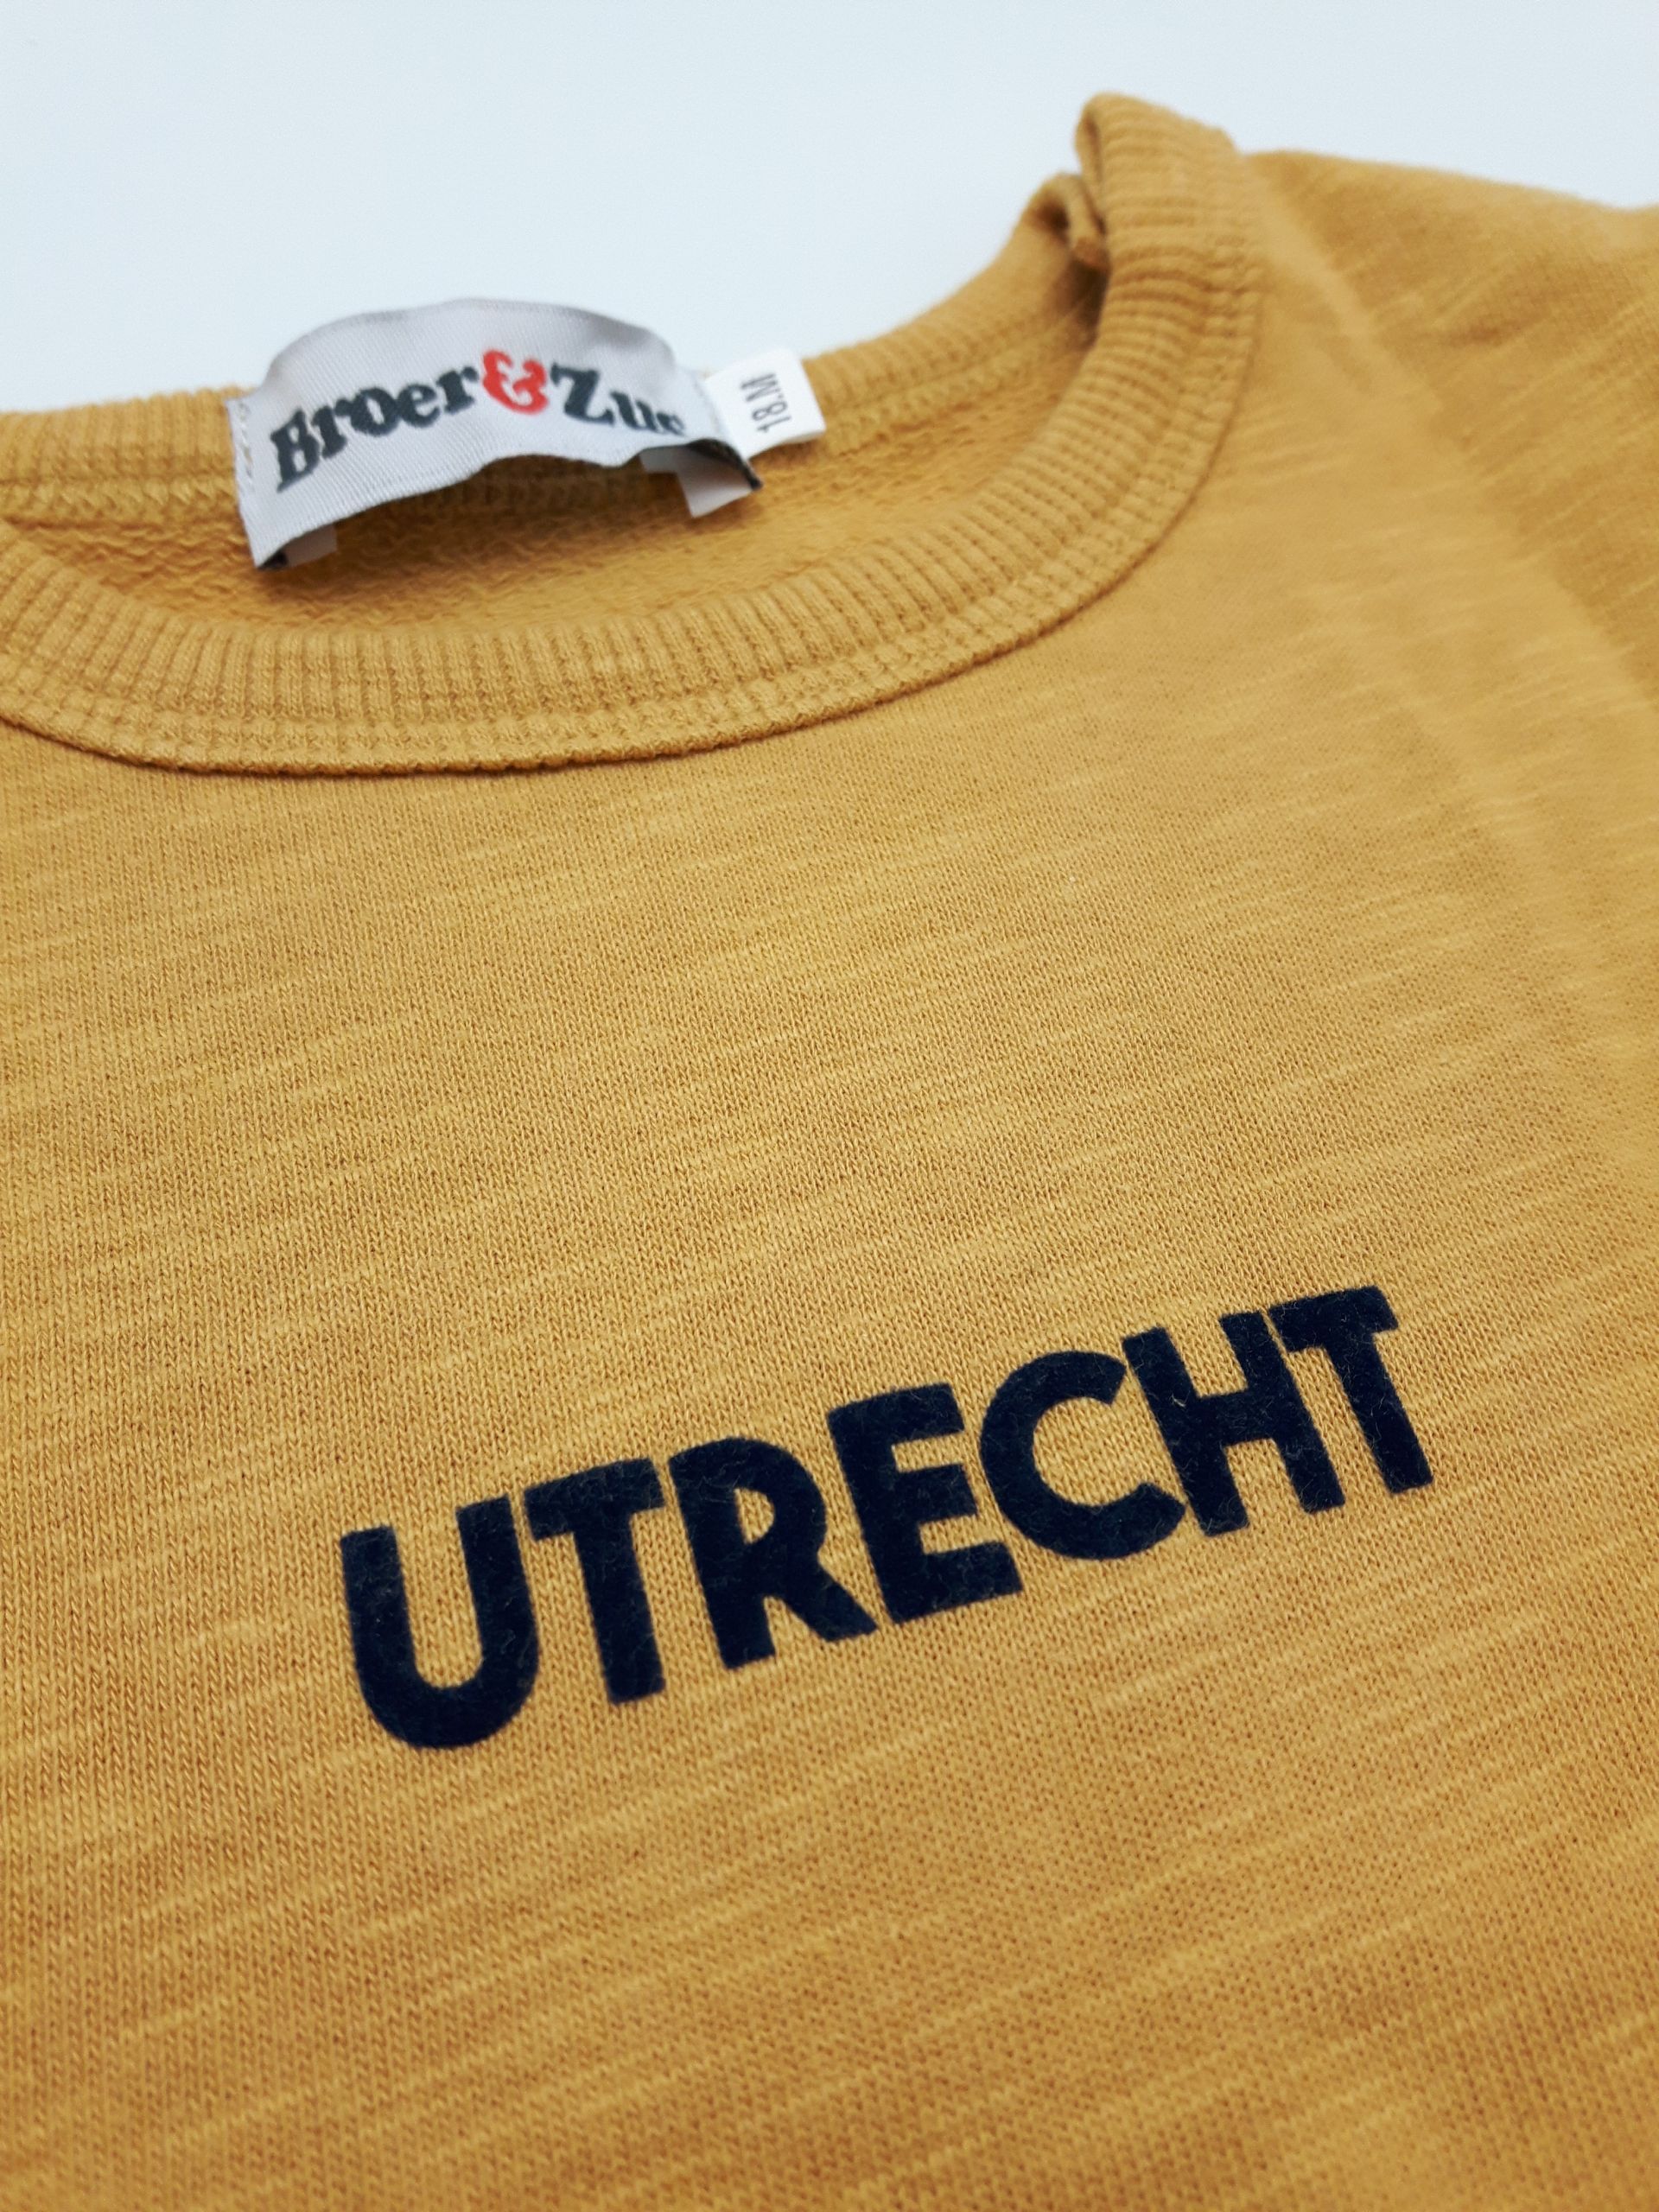 Sweater Utrecht mosterd navy flock 18 maanden